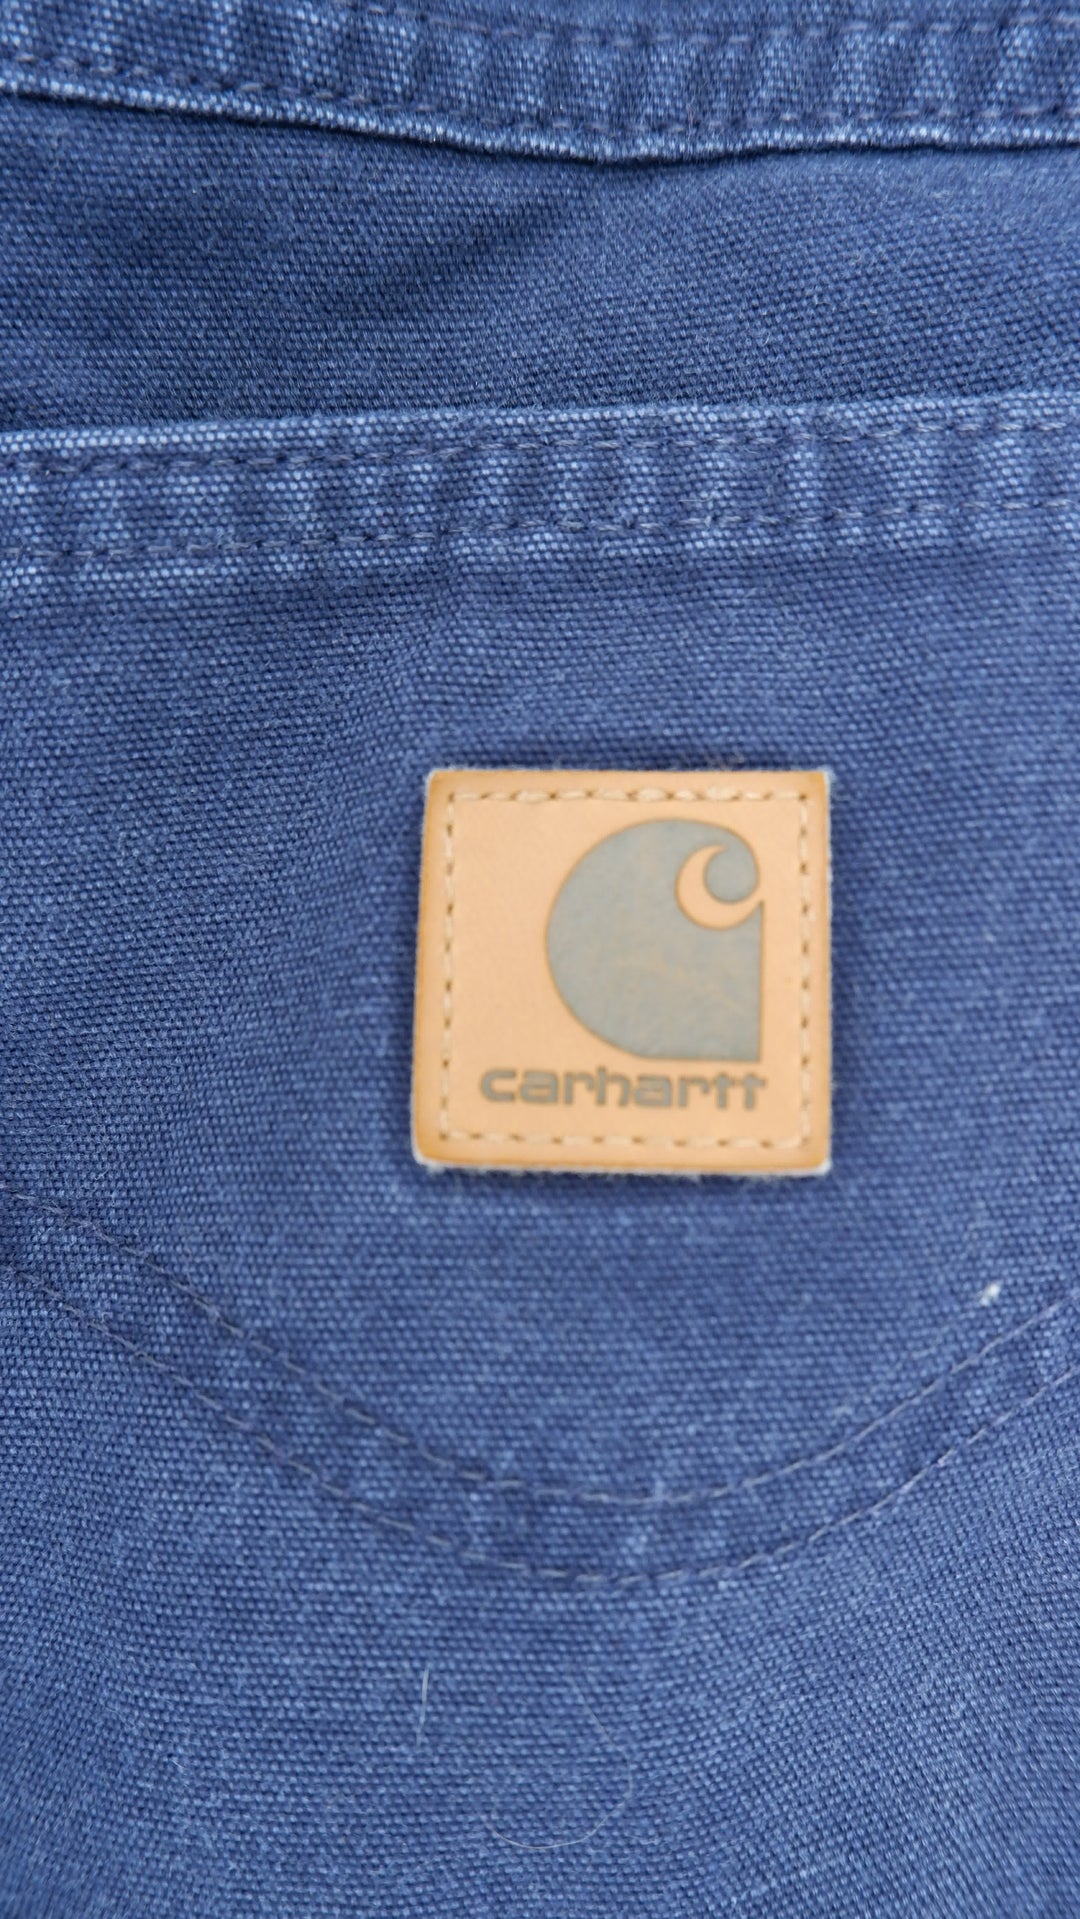 Vintage Carhartt Loose Fit Workwear Pants